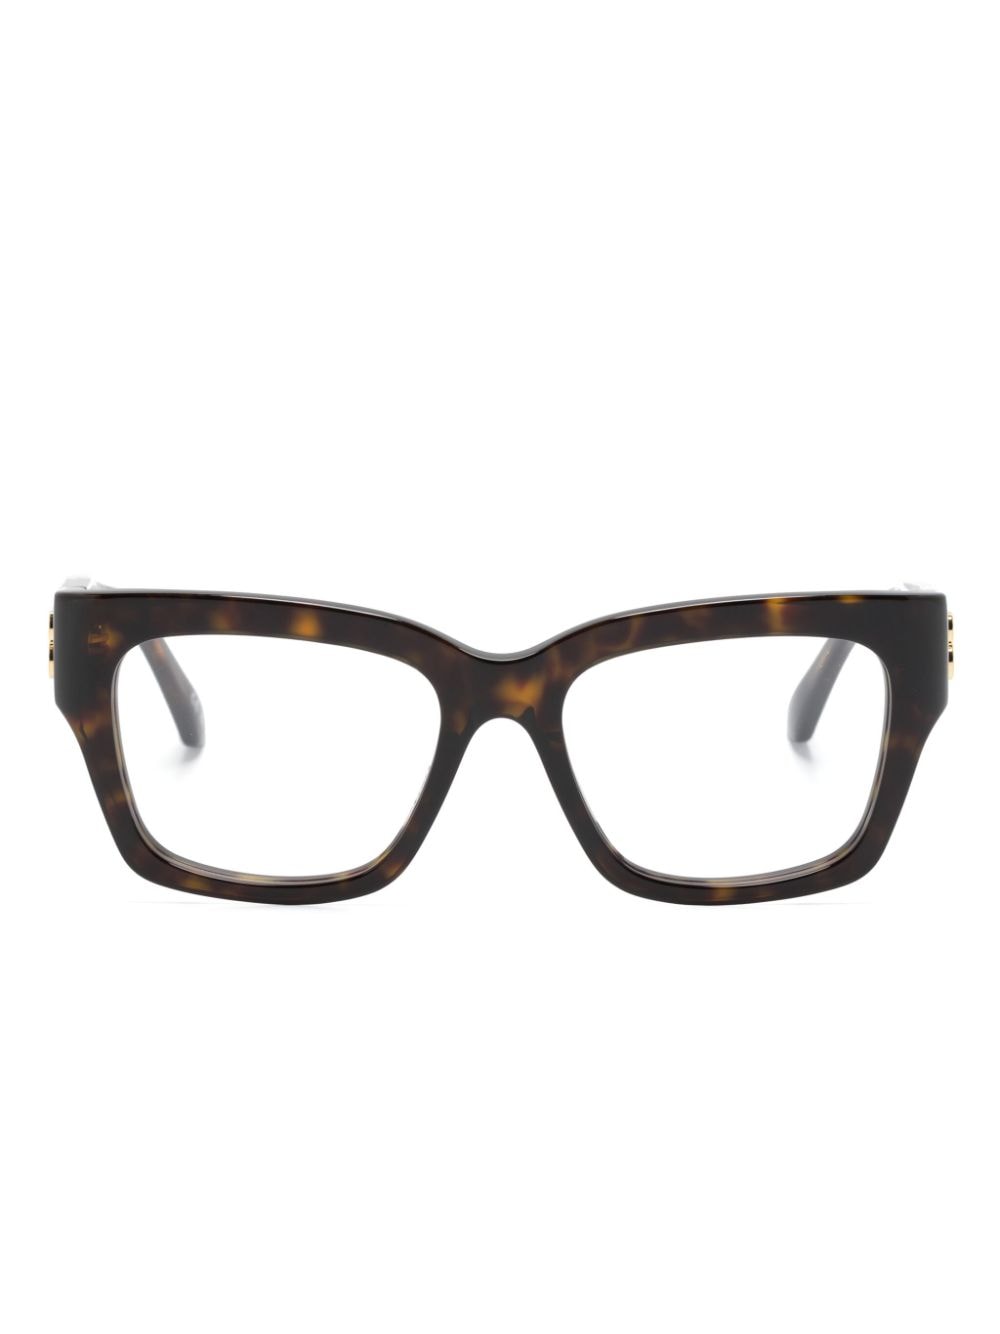 Balenciaga Tortoiseshell Square-frame Glasses In 褐色